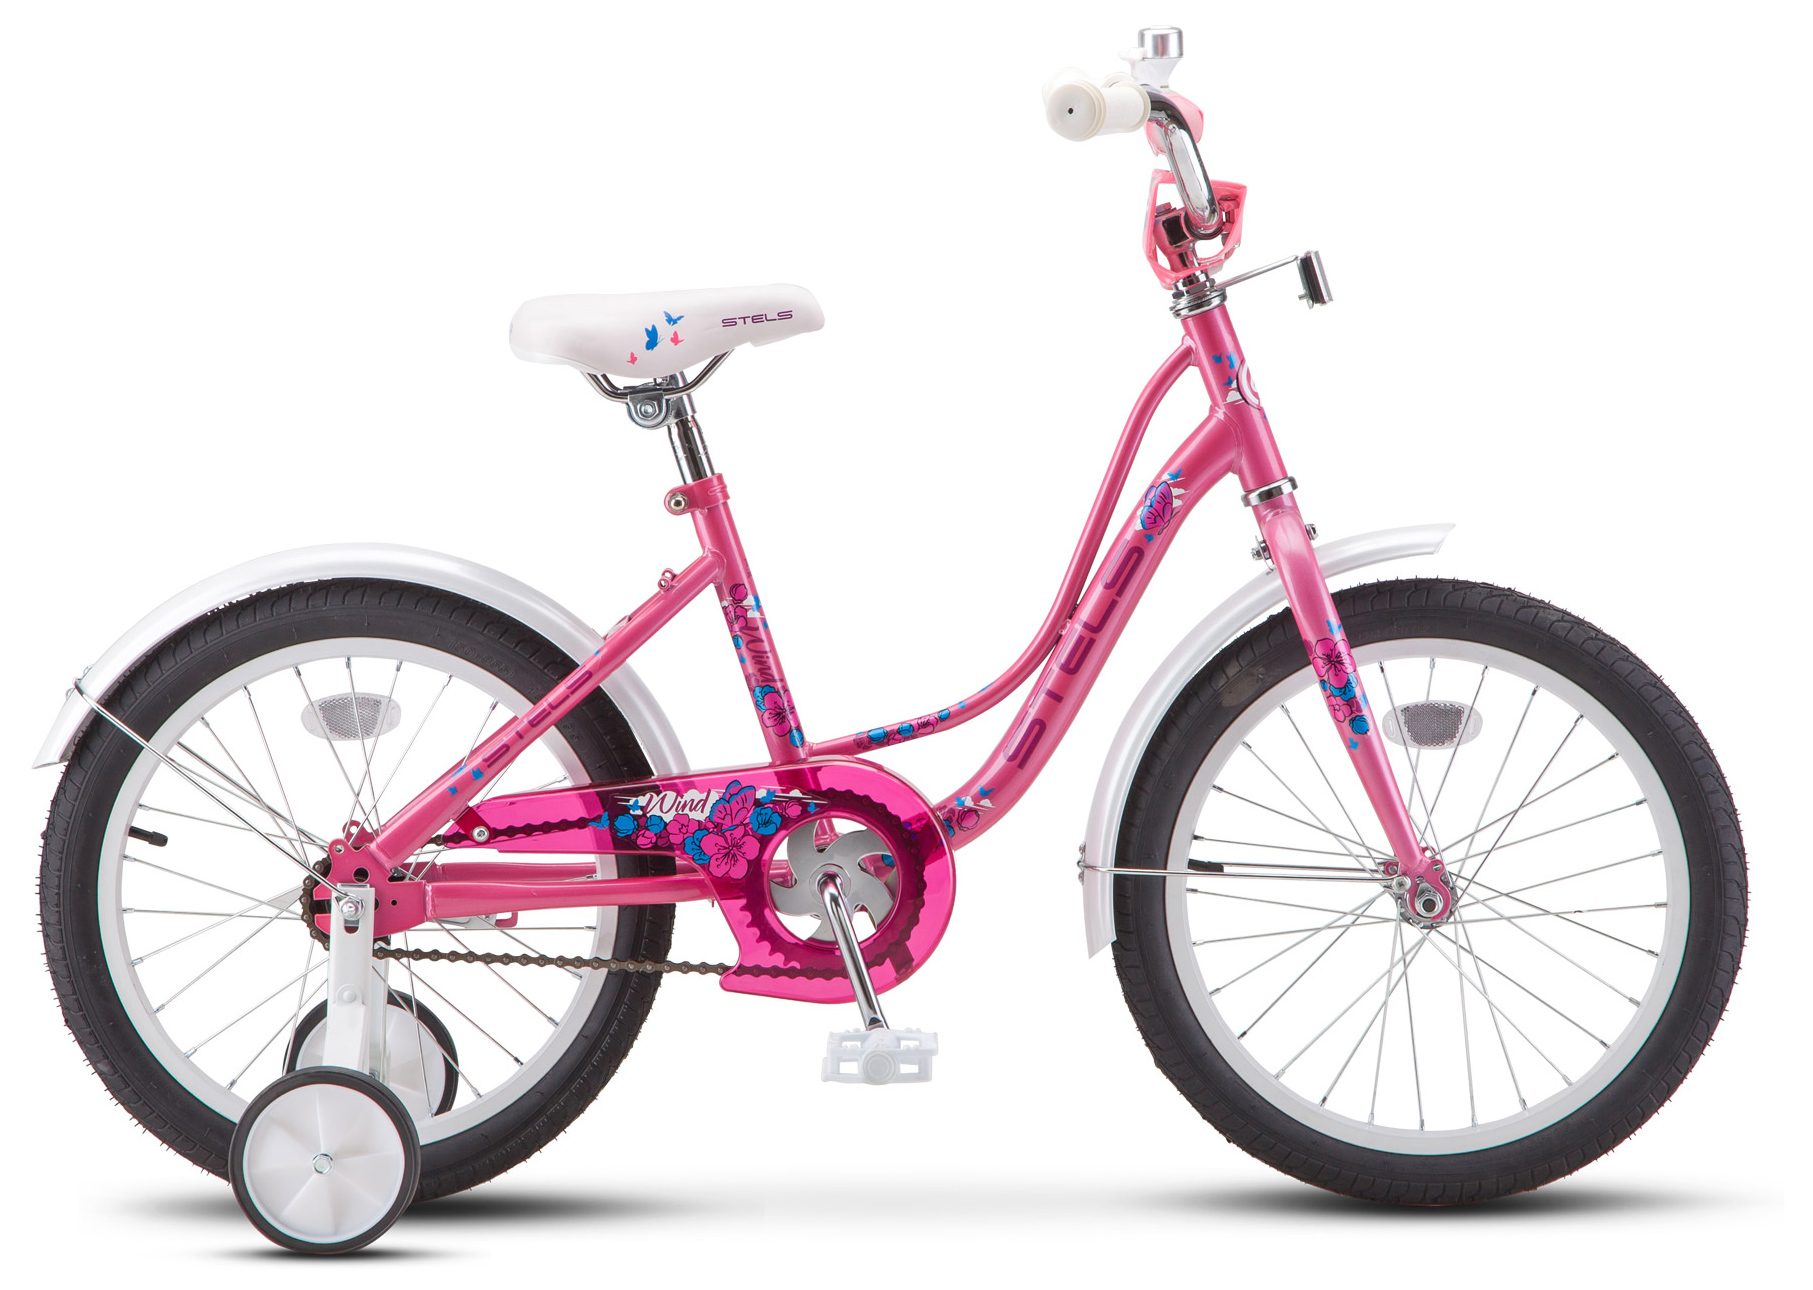  Отзывы о Трехколесный детский велосипед Stels Wind 16 (Z020) 2019